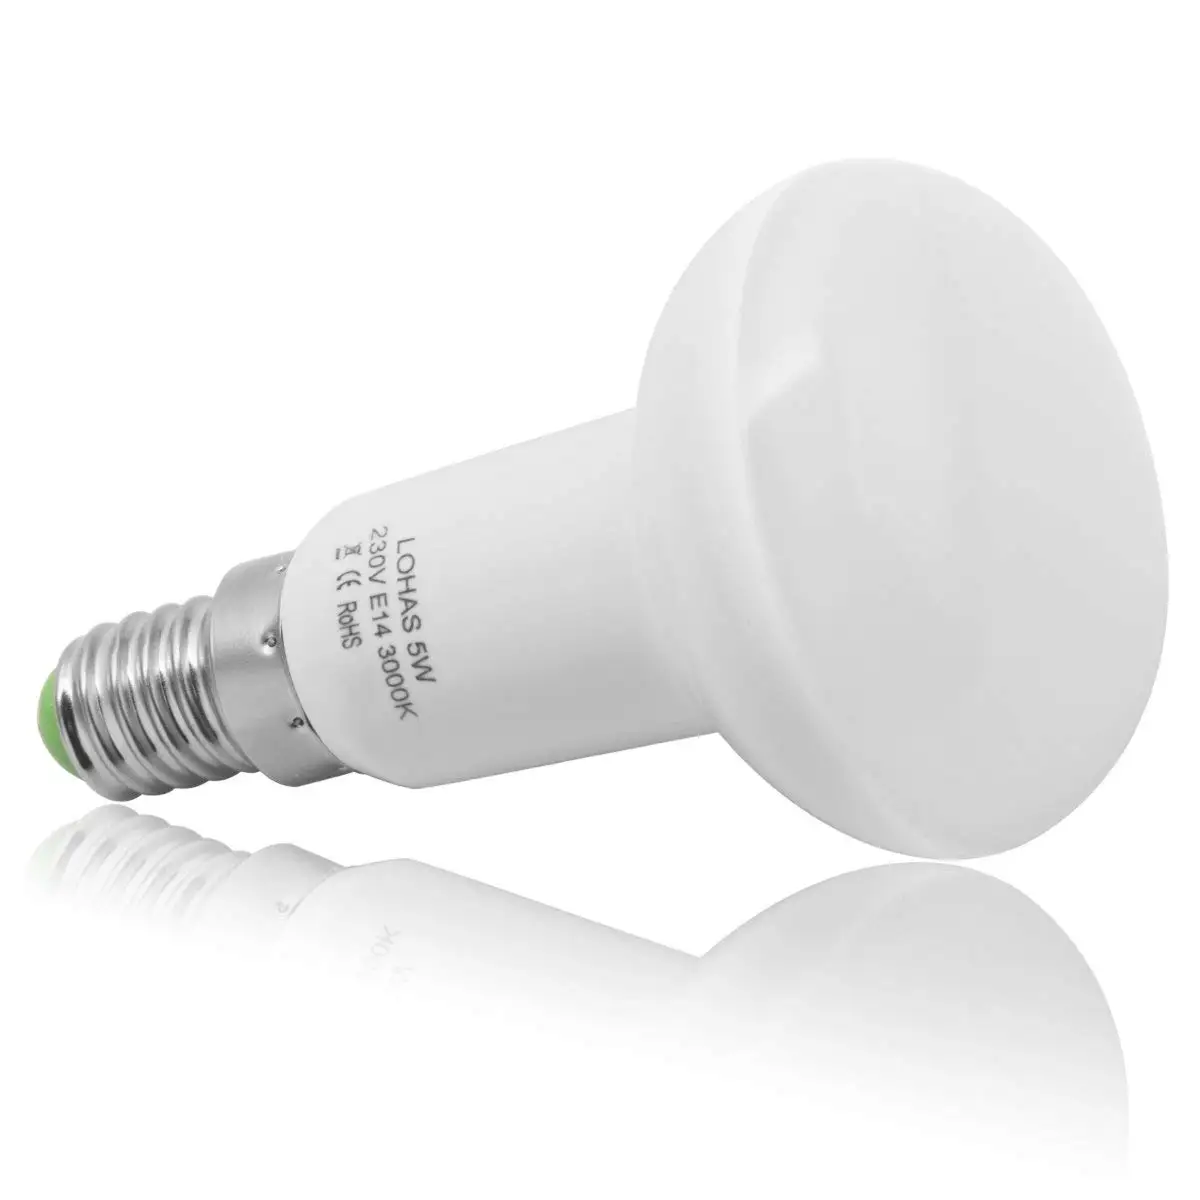 Светодиодный рефлекторный винтовой светильник 5 Вт R50 E14 SES Заменяет 40 Вт лампы накаливания 400lm, теплый белый 3000K [Класс энергопотребления A+]-5 шт. в упаковке